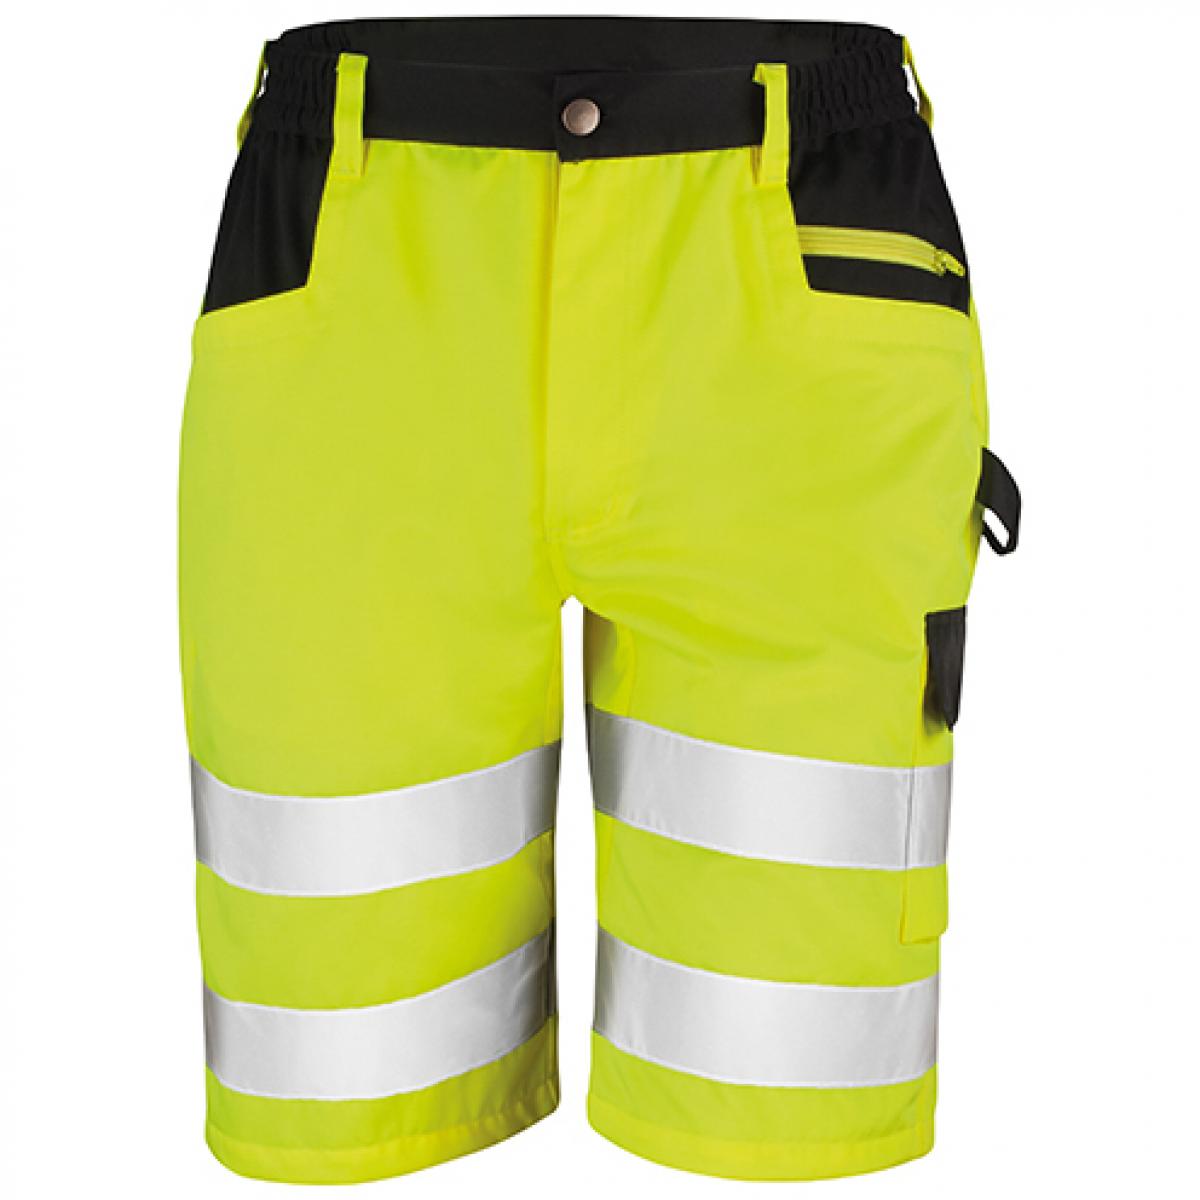 Hersteller: Result Herstellernummer: R328X Artikelbezeichnung: Safety Cargo Shorts - Kurze Arbeitshose nach EN20471:2013 K Farbe: Fluorescent Yellow